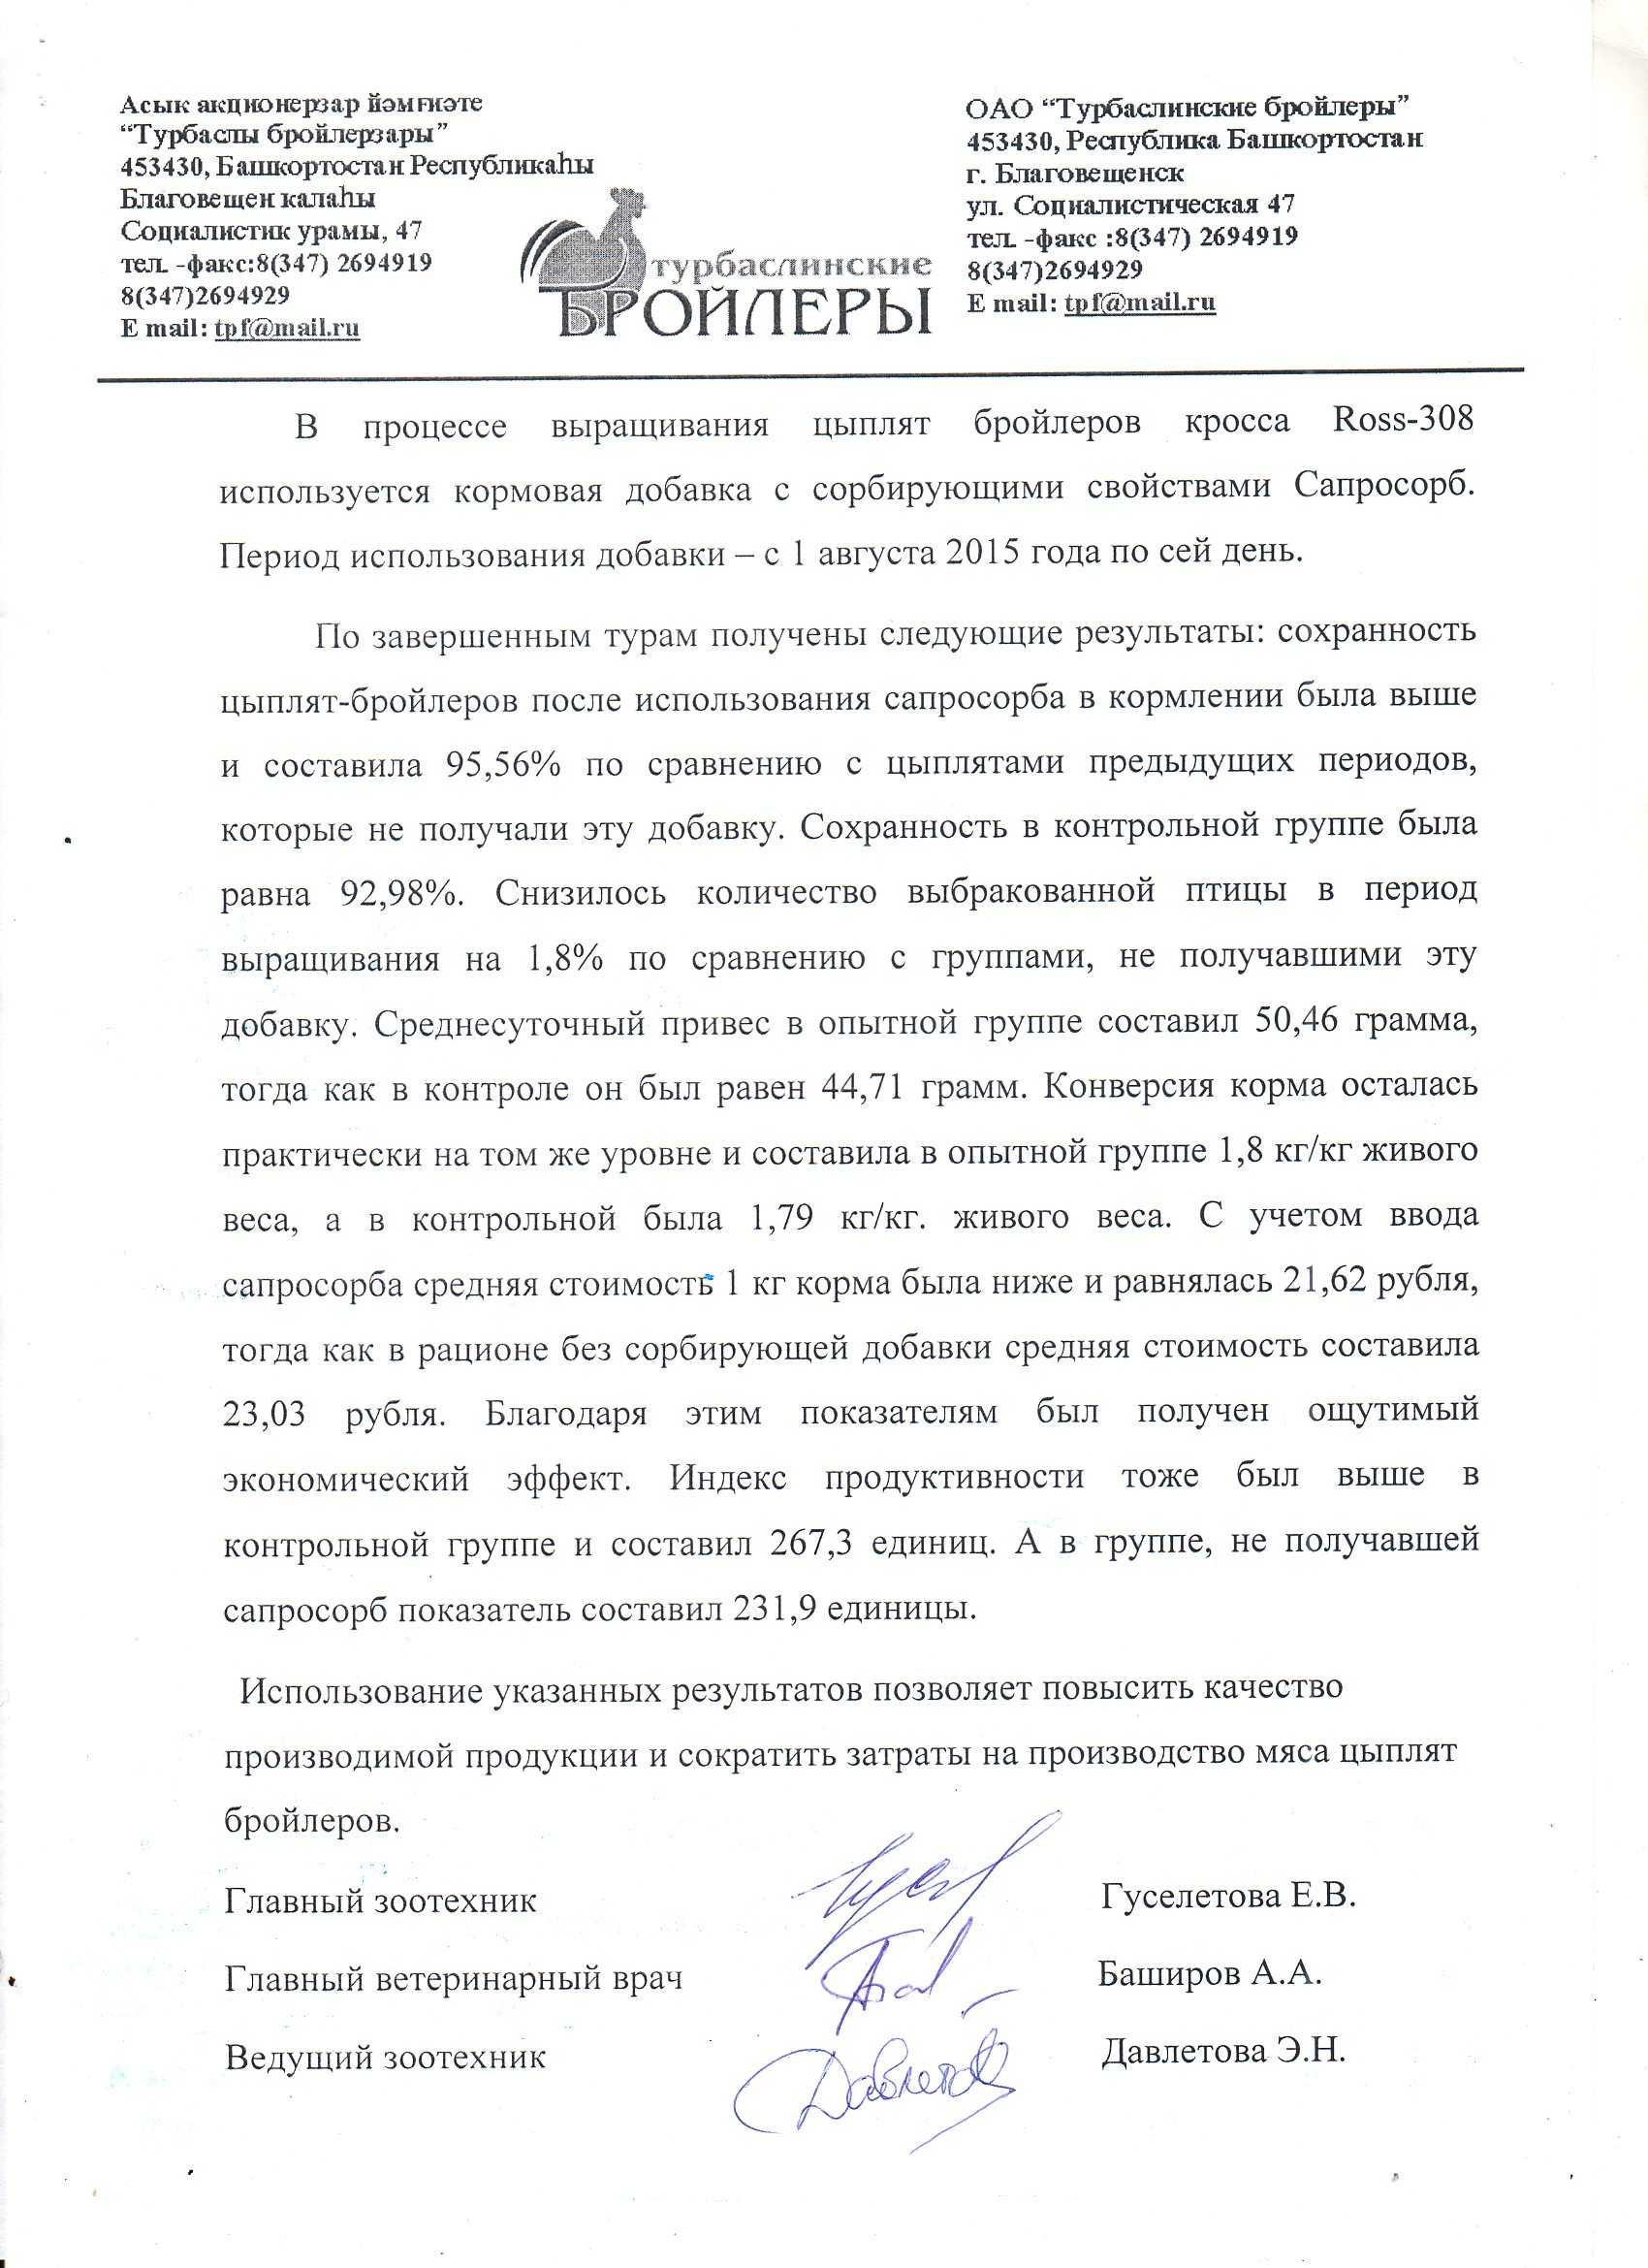 Акт о внедрении докторской диссертационной работы Коломийца Сергея Николаевича